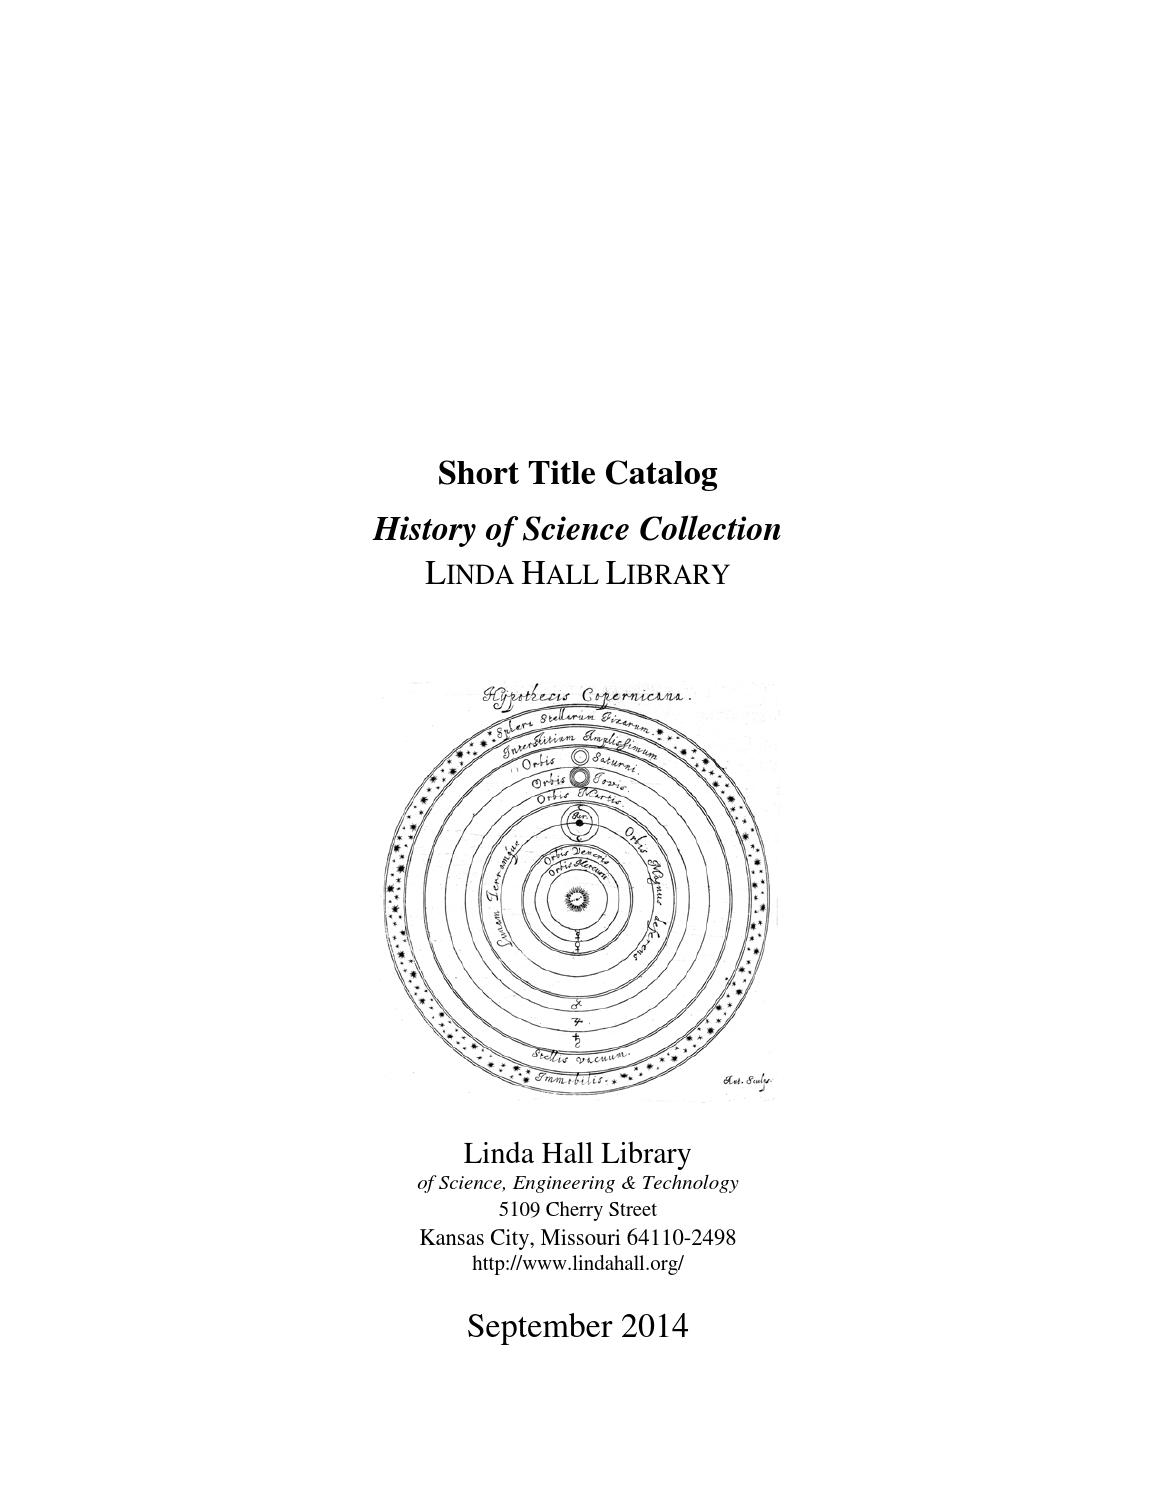 Englischer Garten München Adresse Schön History Of Science Collection Stc by Bruce Bradley issuu